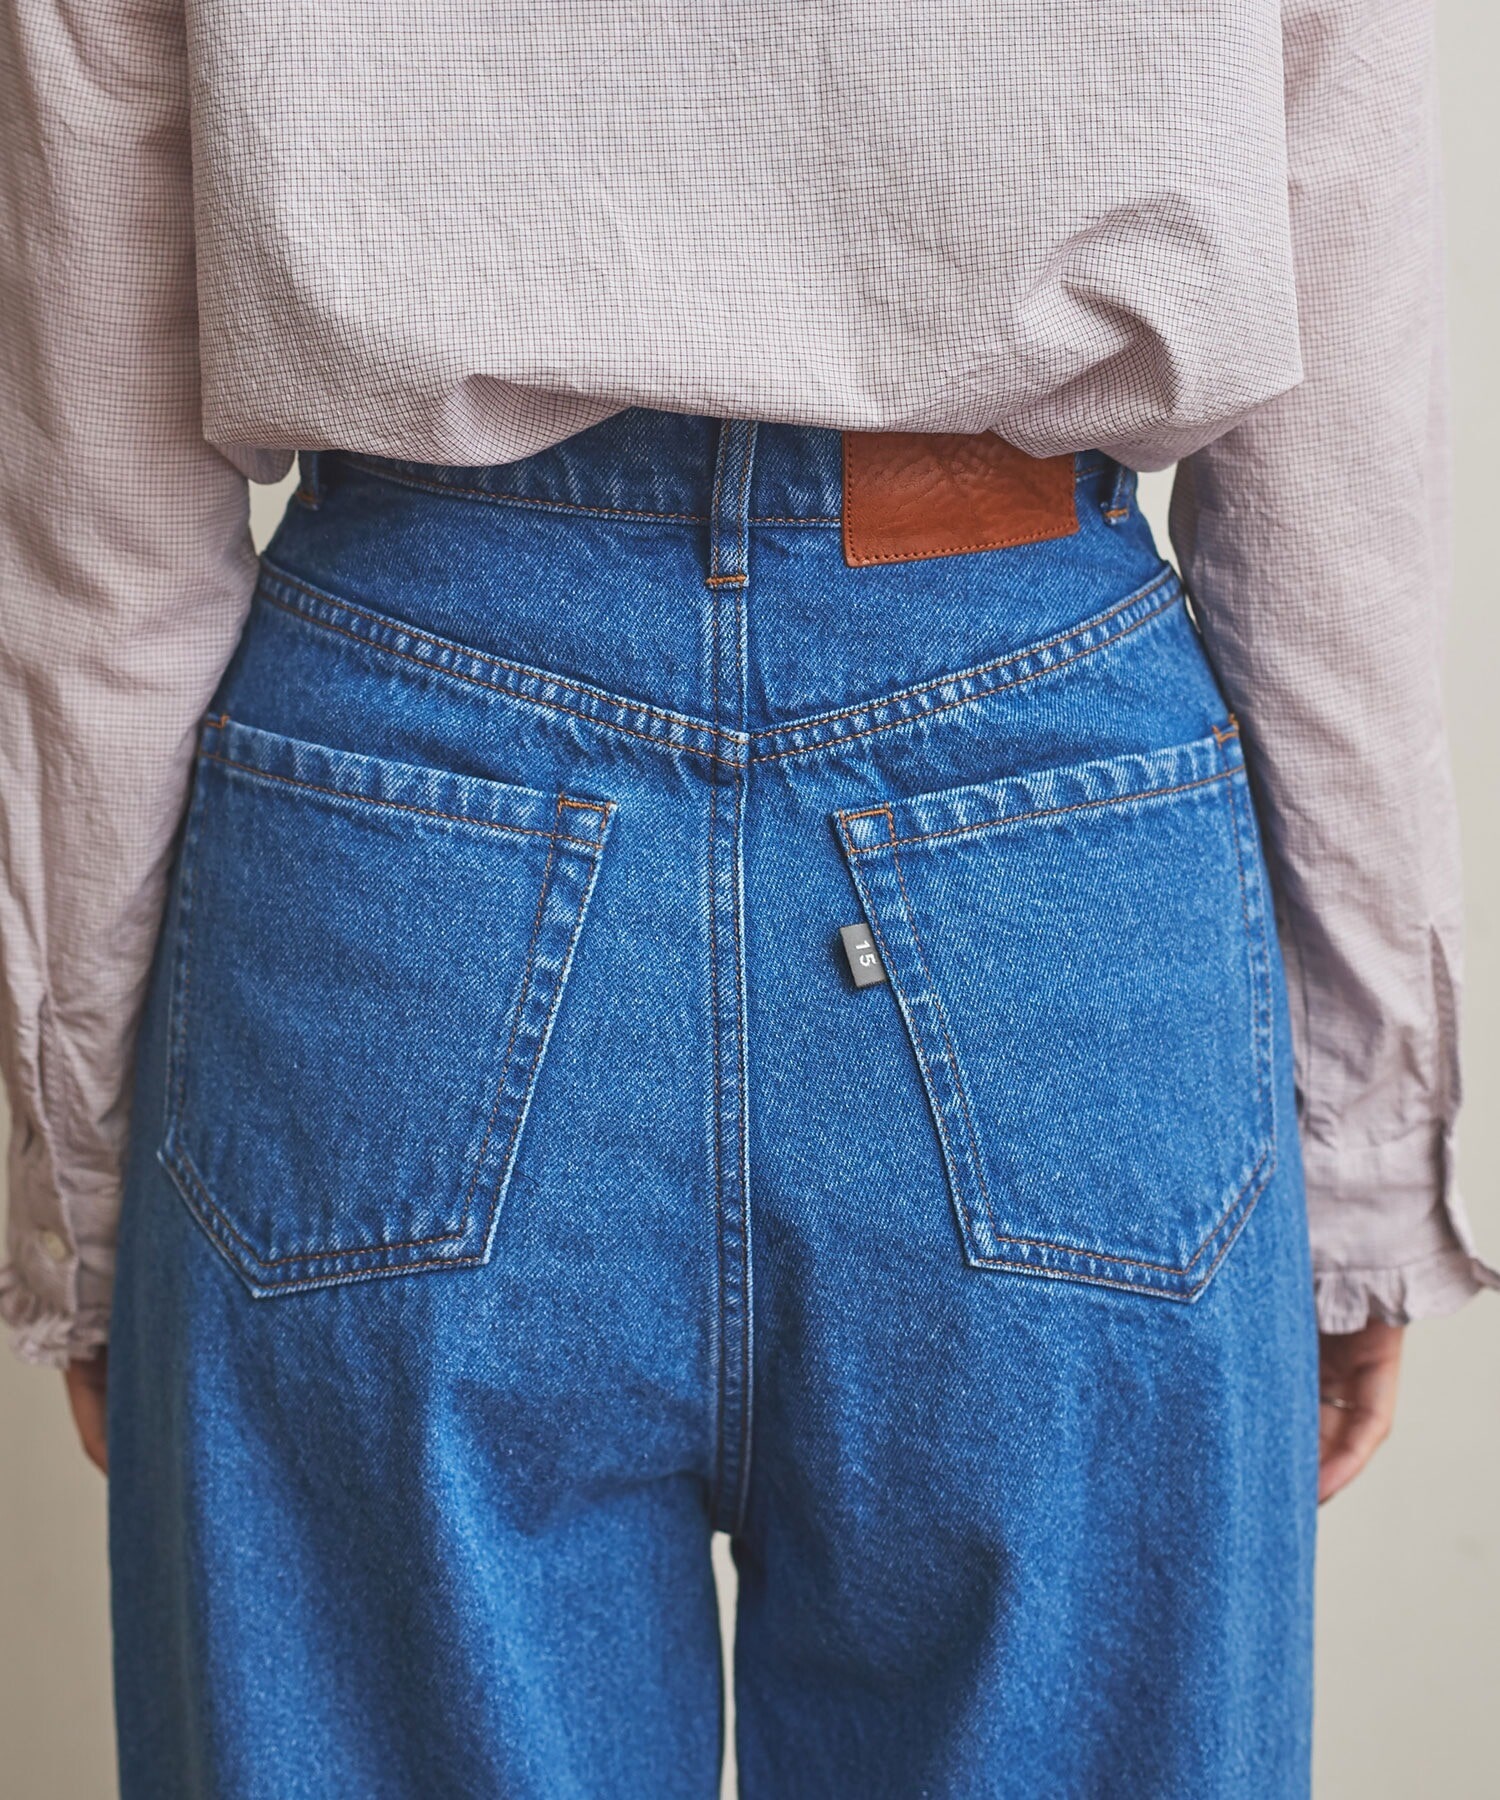 安い買うfig London jeans 001 さくら デニム/ジーンズ